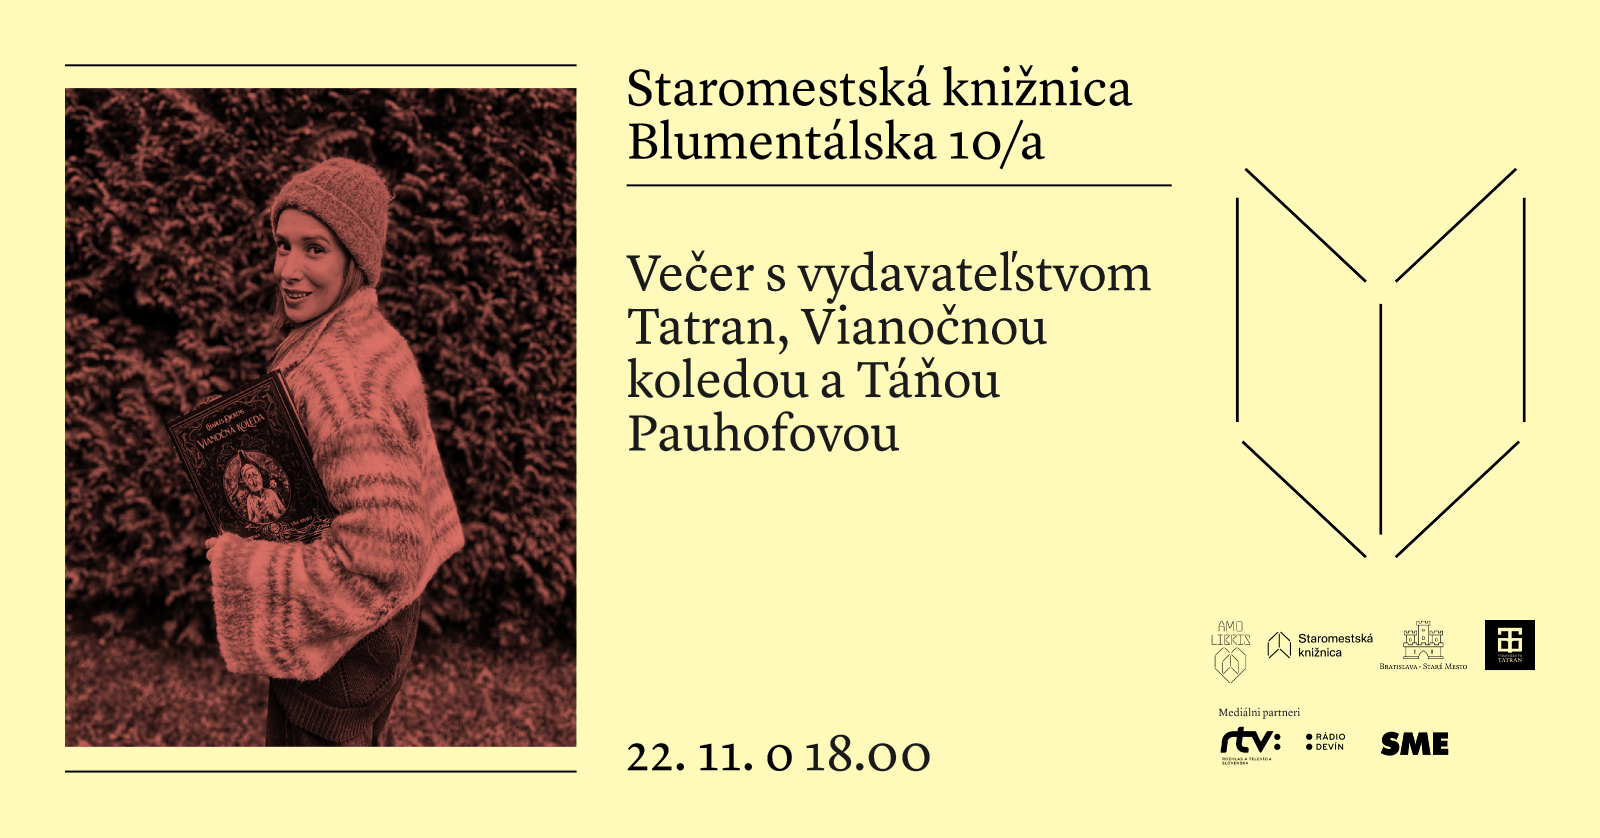 Večer s vydavateľstvom Tatran, Vianočnou koledou a Táňou Pauhofovou v Staromestskej knižnici na Blumentálskej 10/a v stredu 22. novembra o 18.00